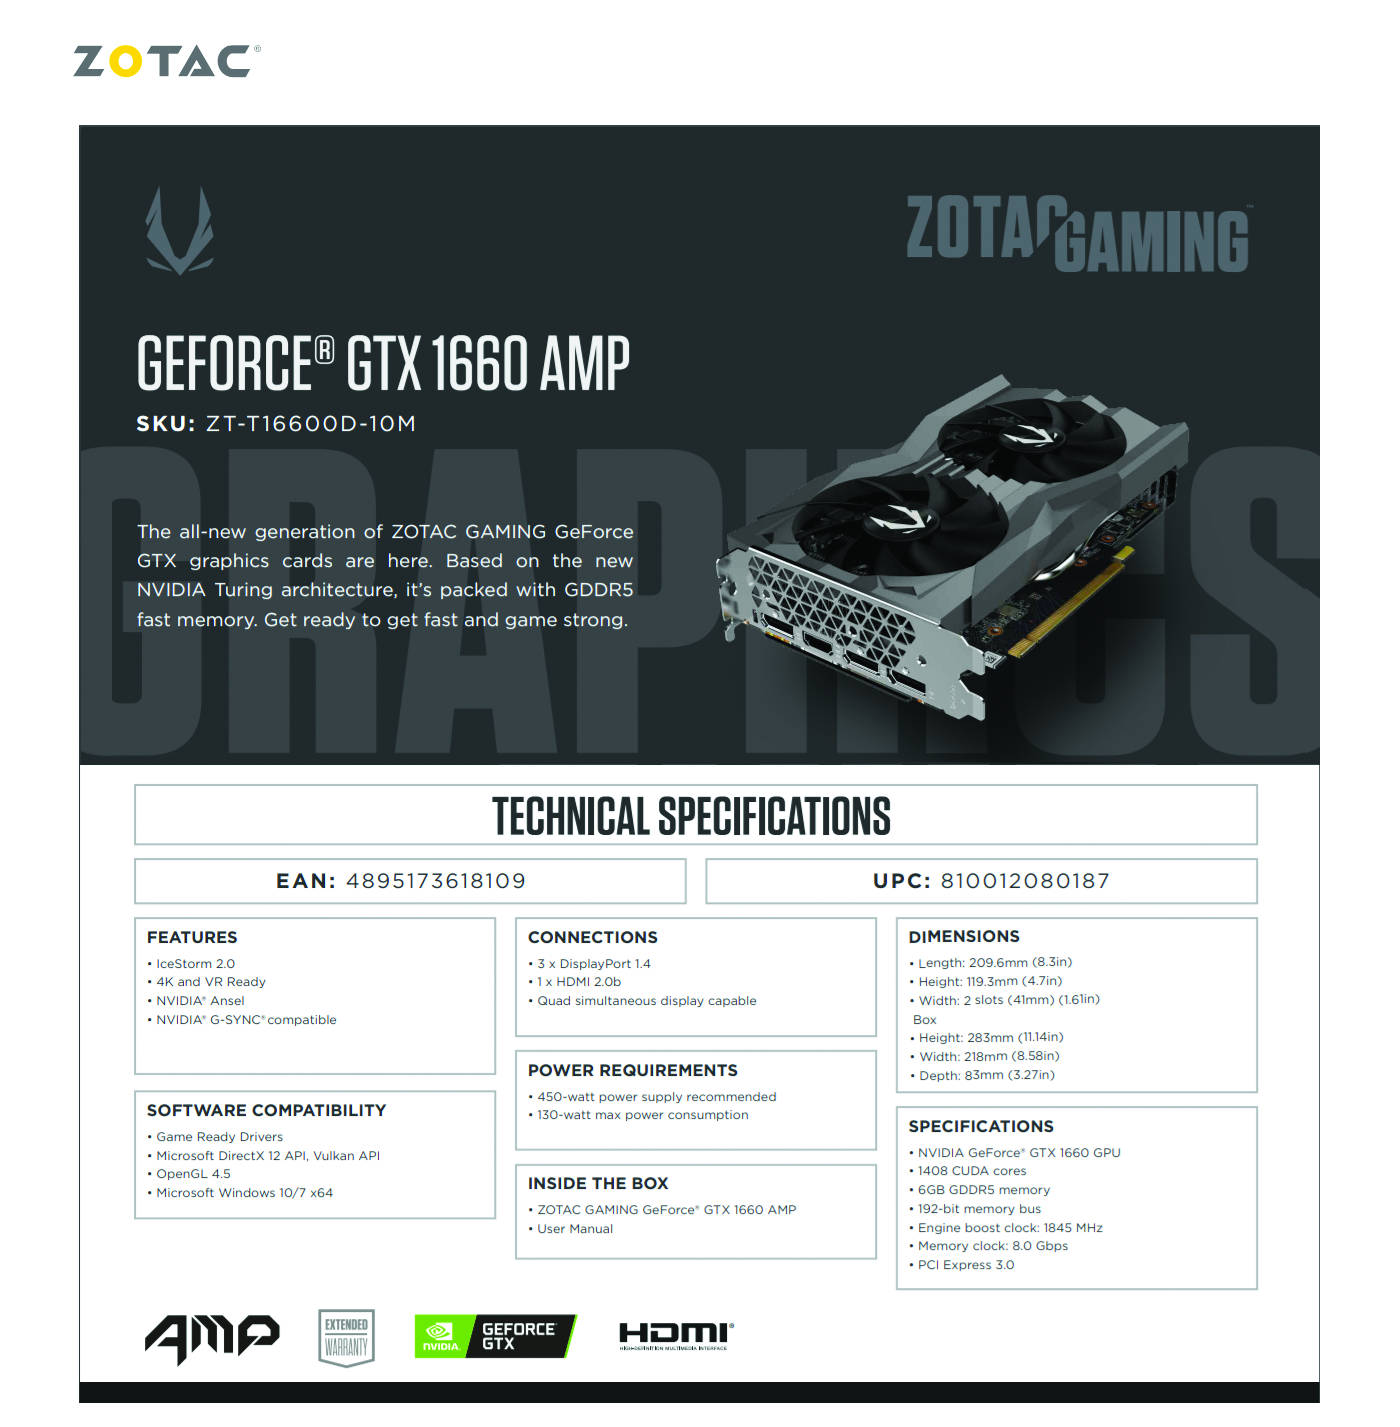  Buy Online Zotac GAMING Geforce GTX 1660 AMP Edition 6GB GDDR5 (ZT-T16600D-10M)